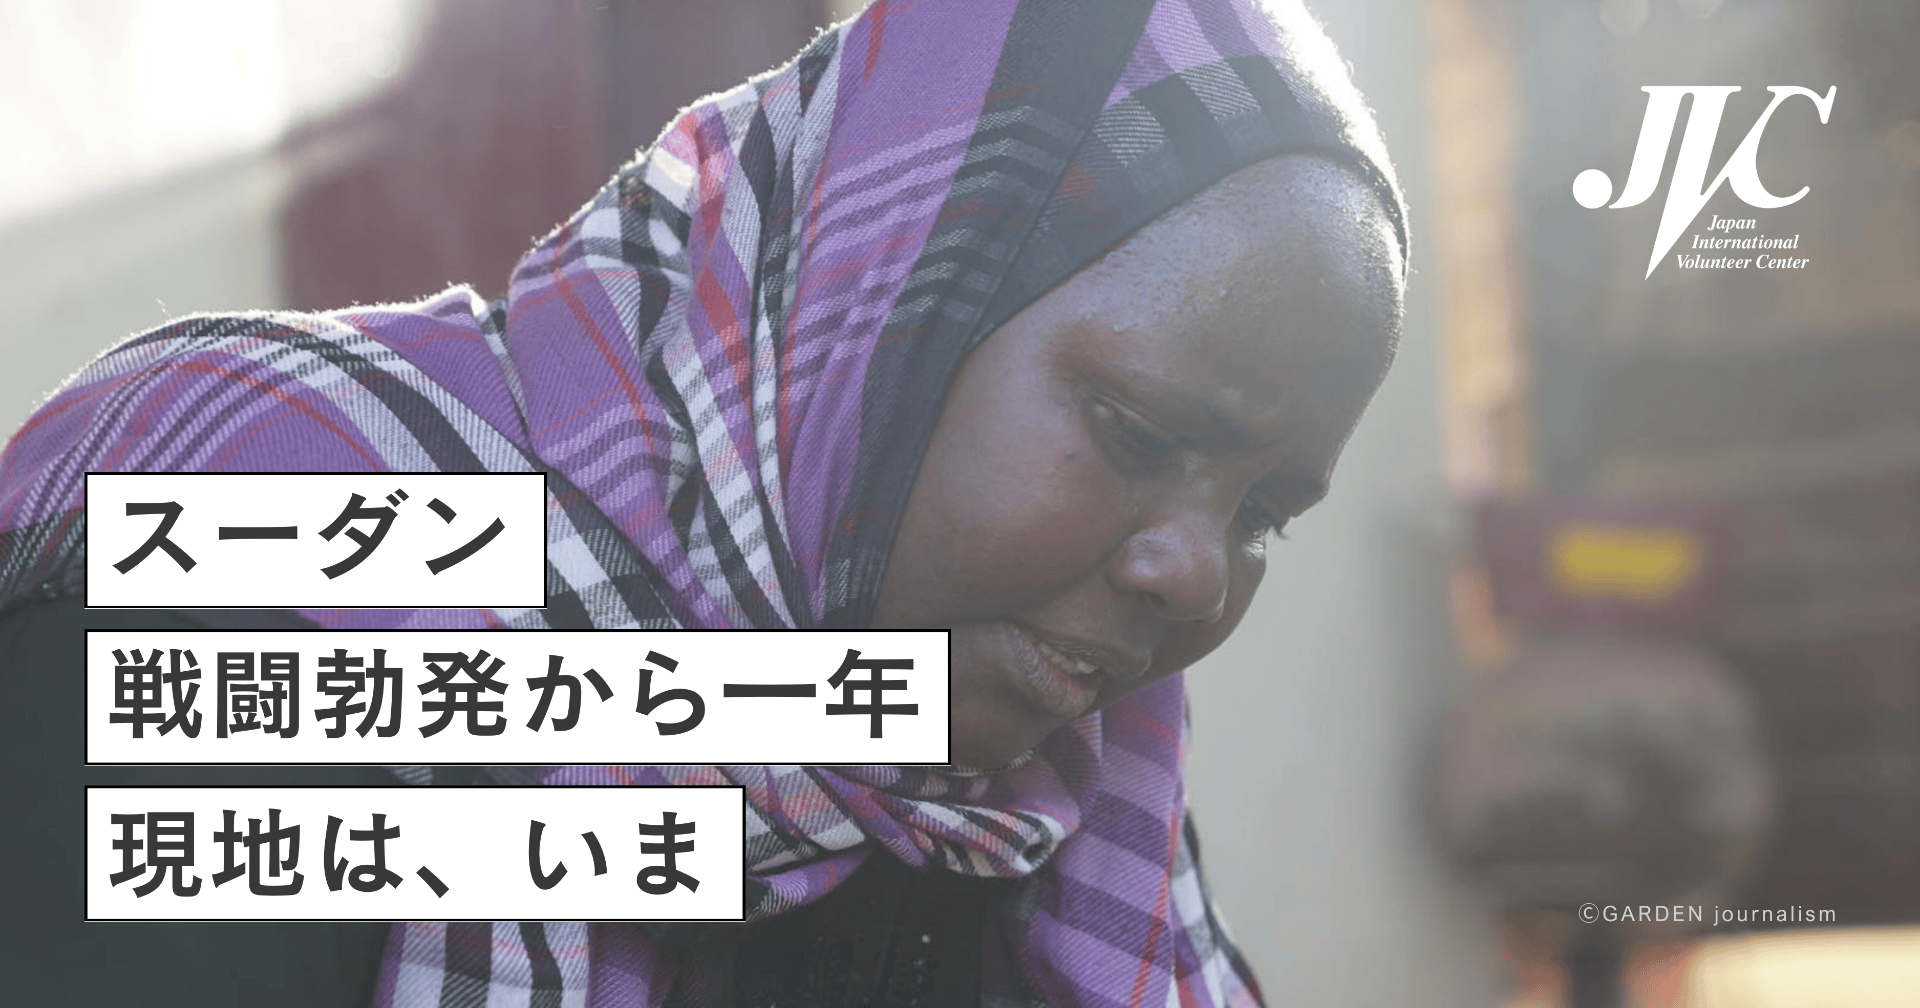 戦闘勃発から1年、状況が悪化するスーダンを支える寄付キャンペーンを開始しました